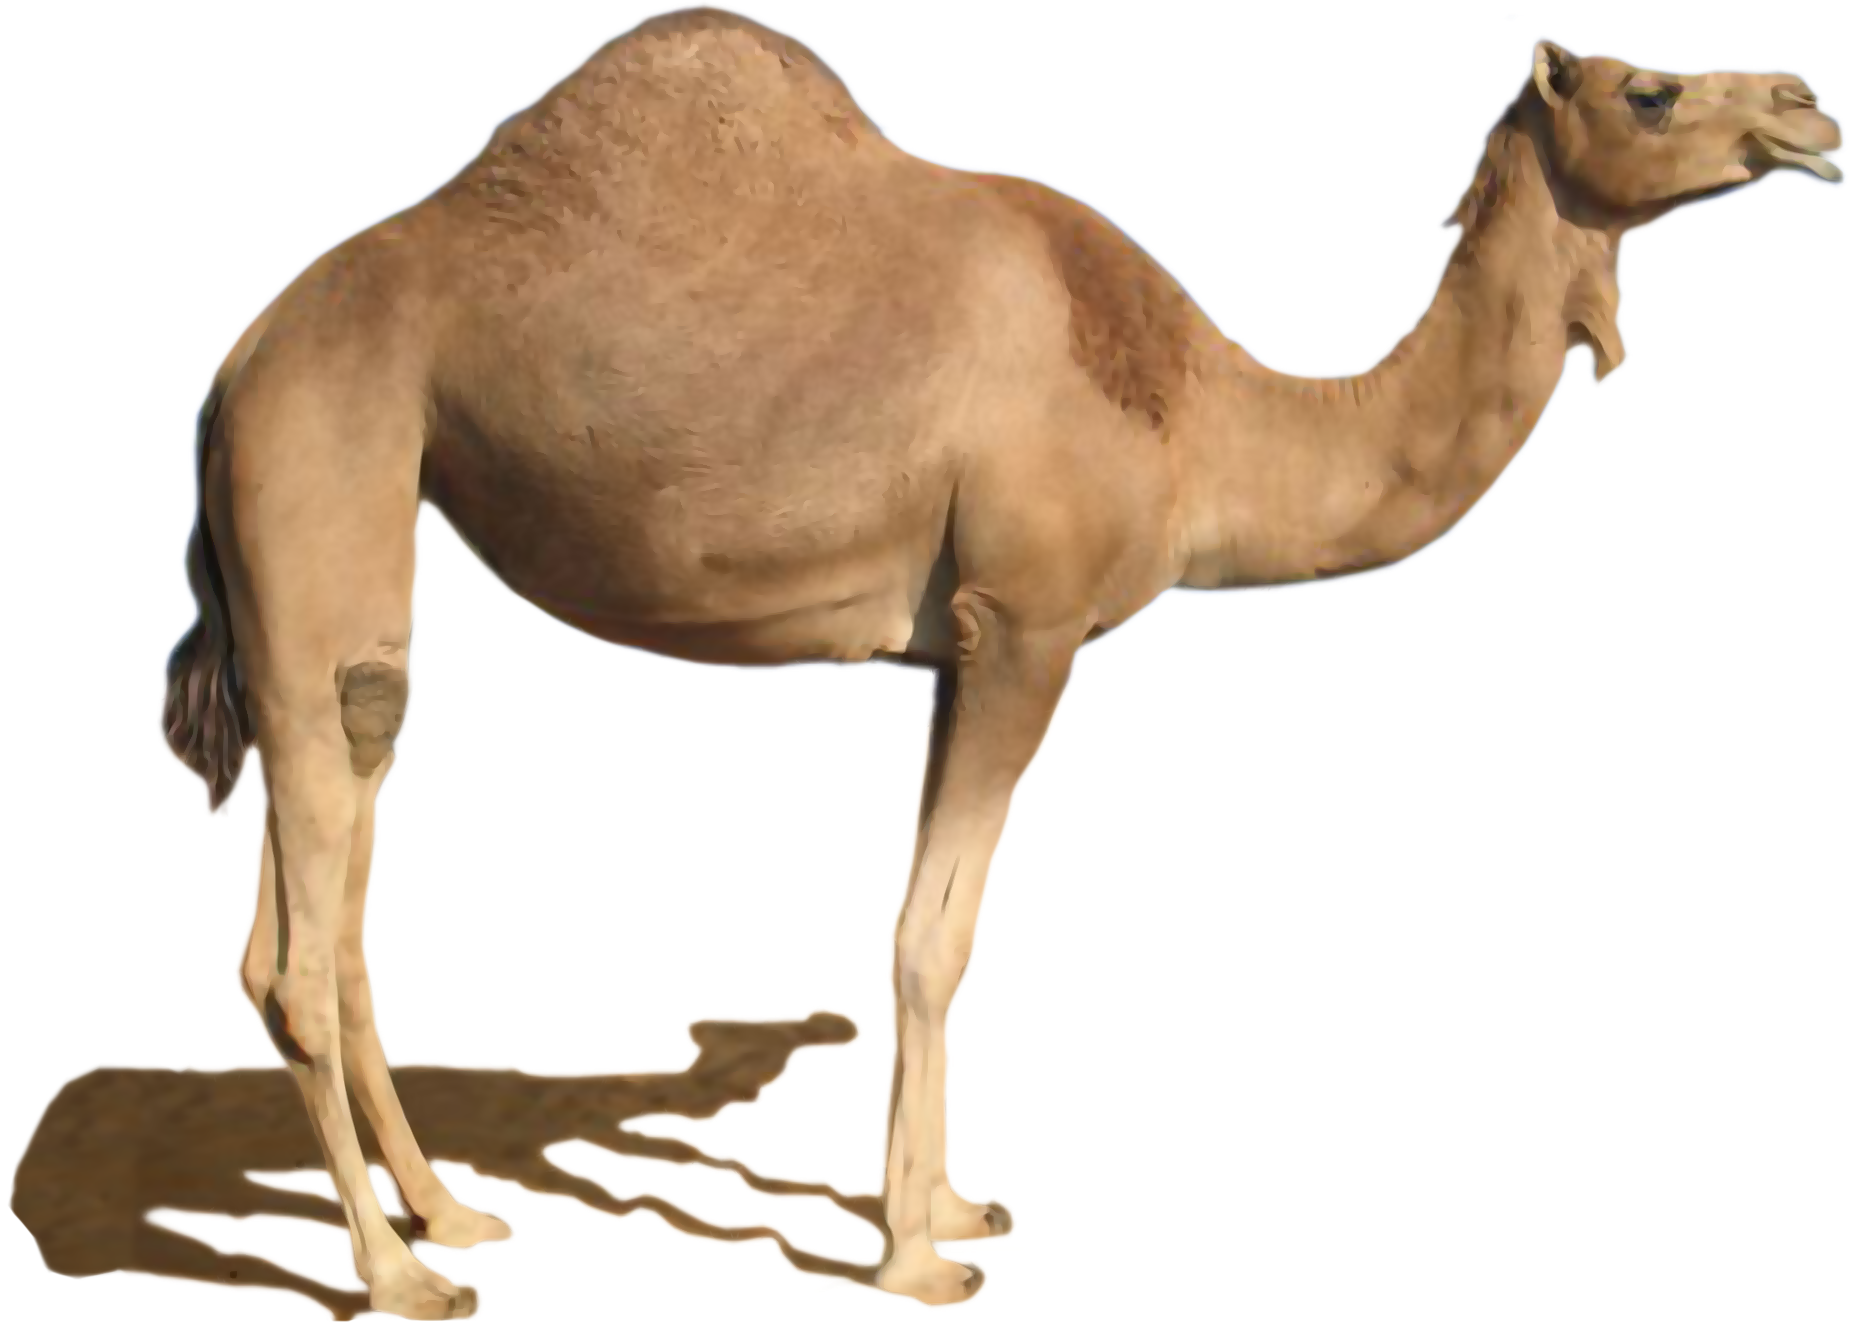 desert camel, Desert, Desert 